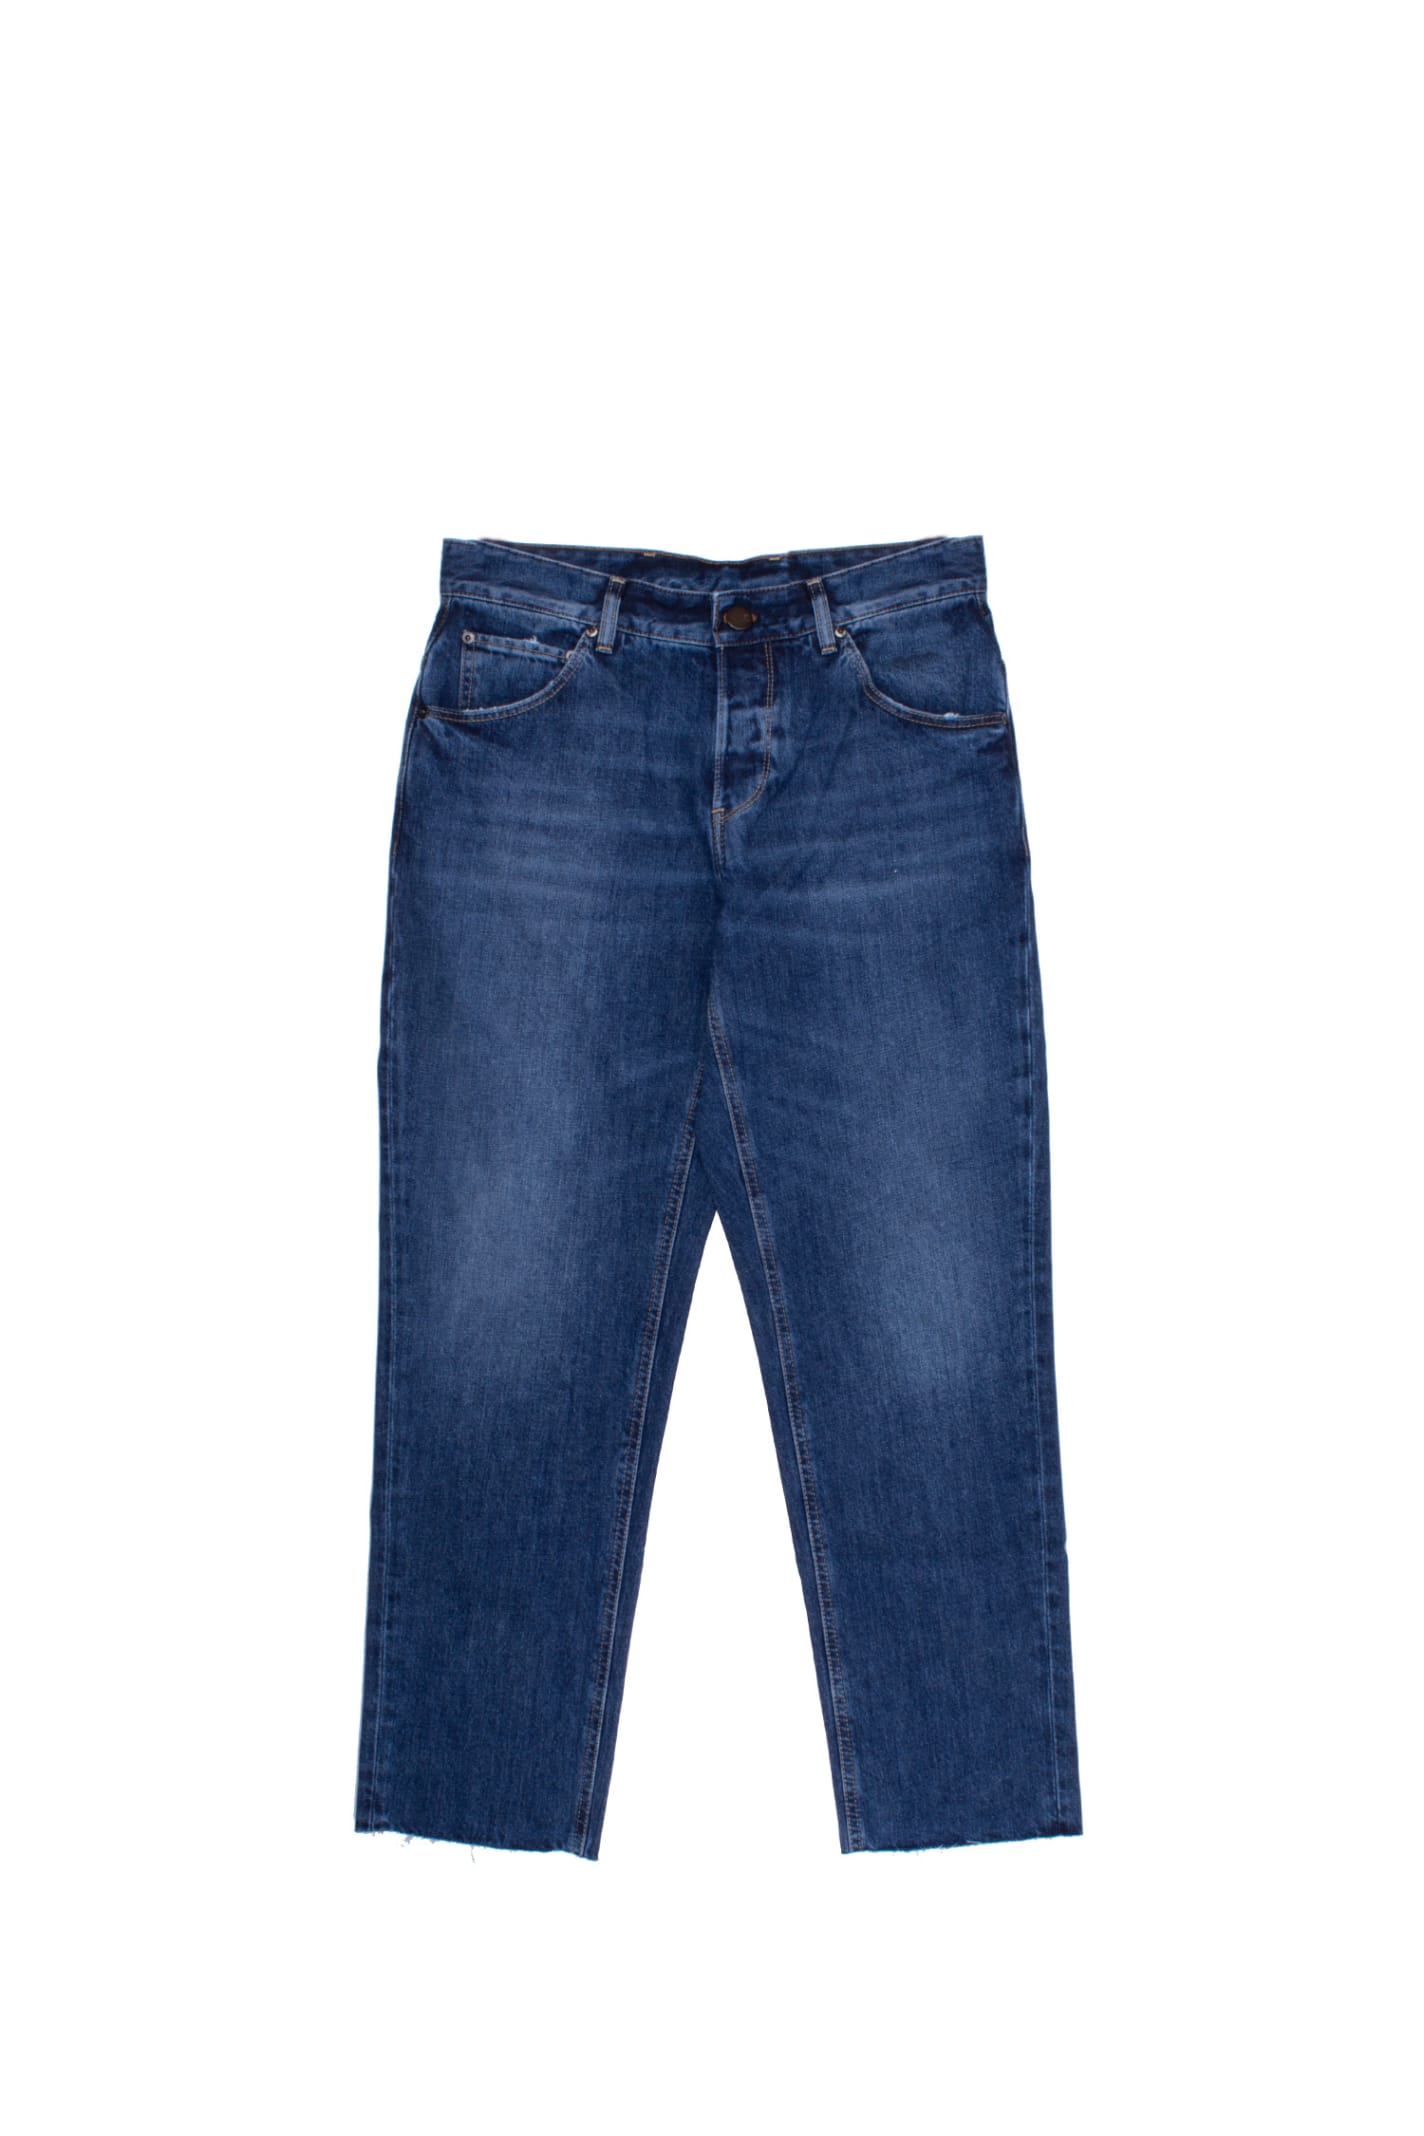 PT01 Cotton Jeans